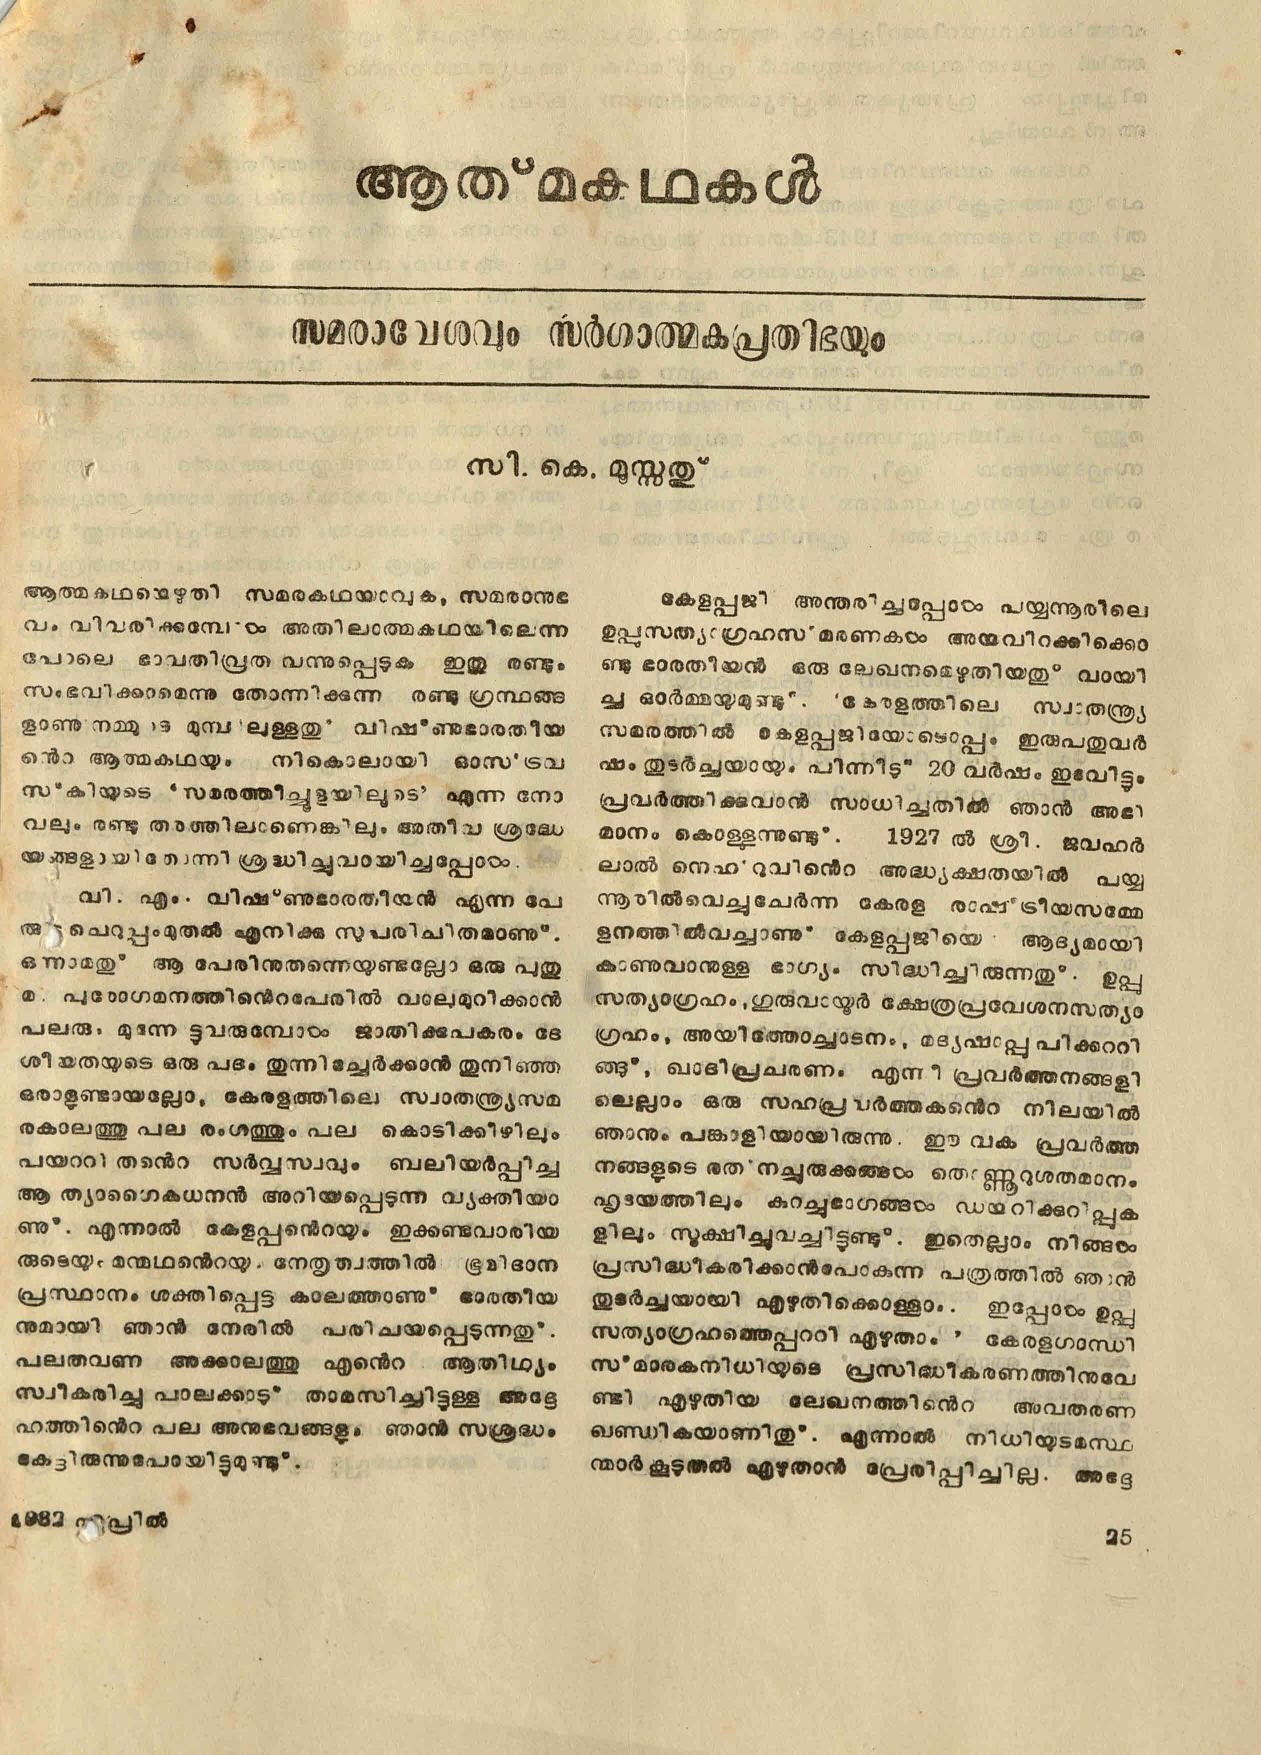 1982 - ആത്മകഥകൾ - സമരാവേശവും സർഗ്ഗാത്മക പ്രതിഭയും - സി. കെ. മൂസ്സത്